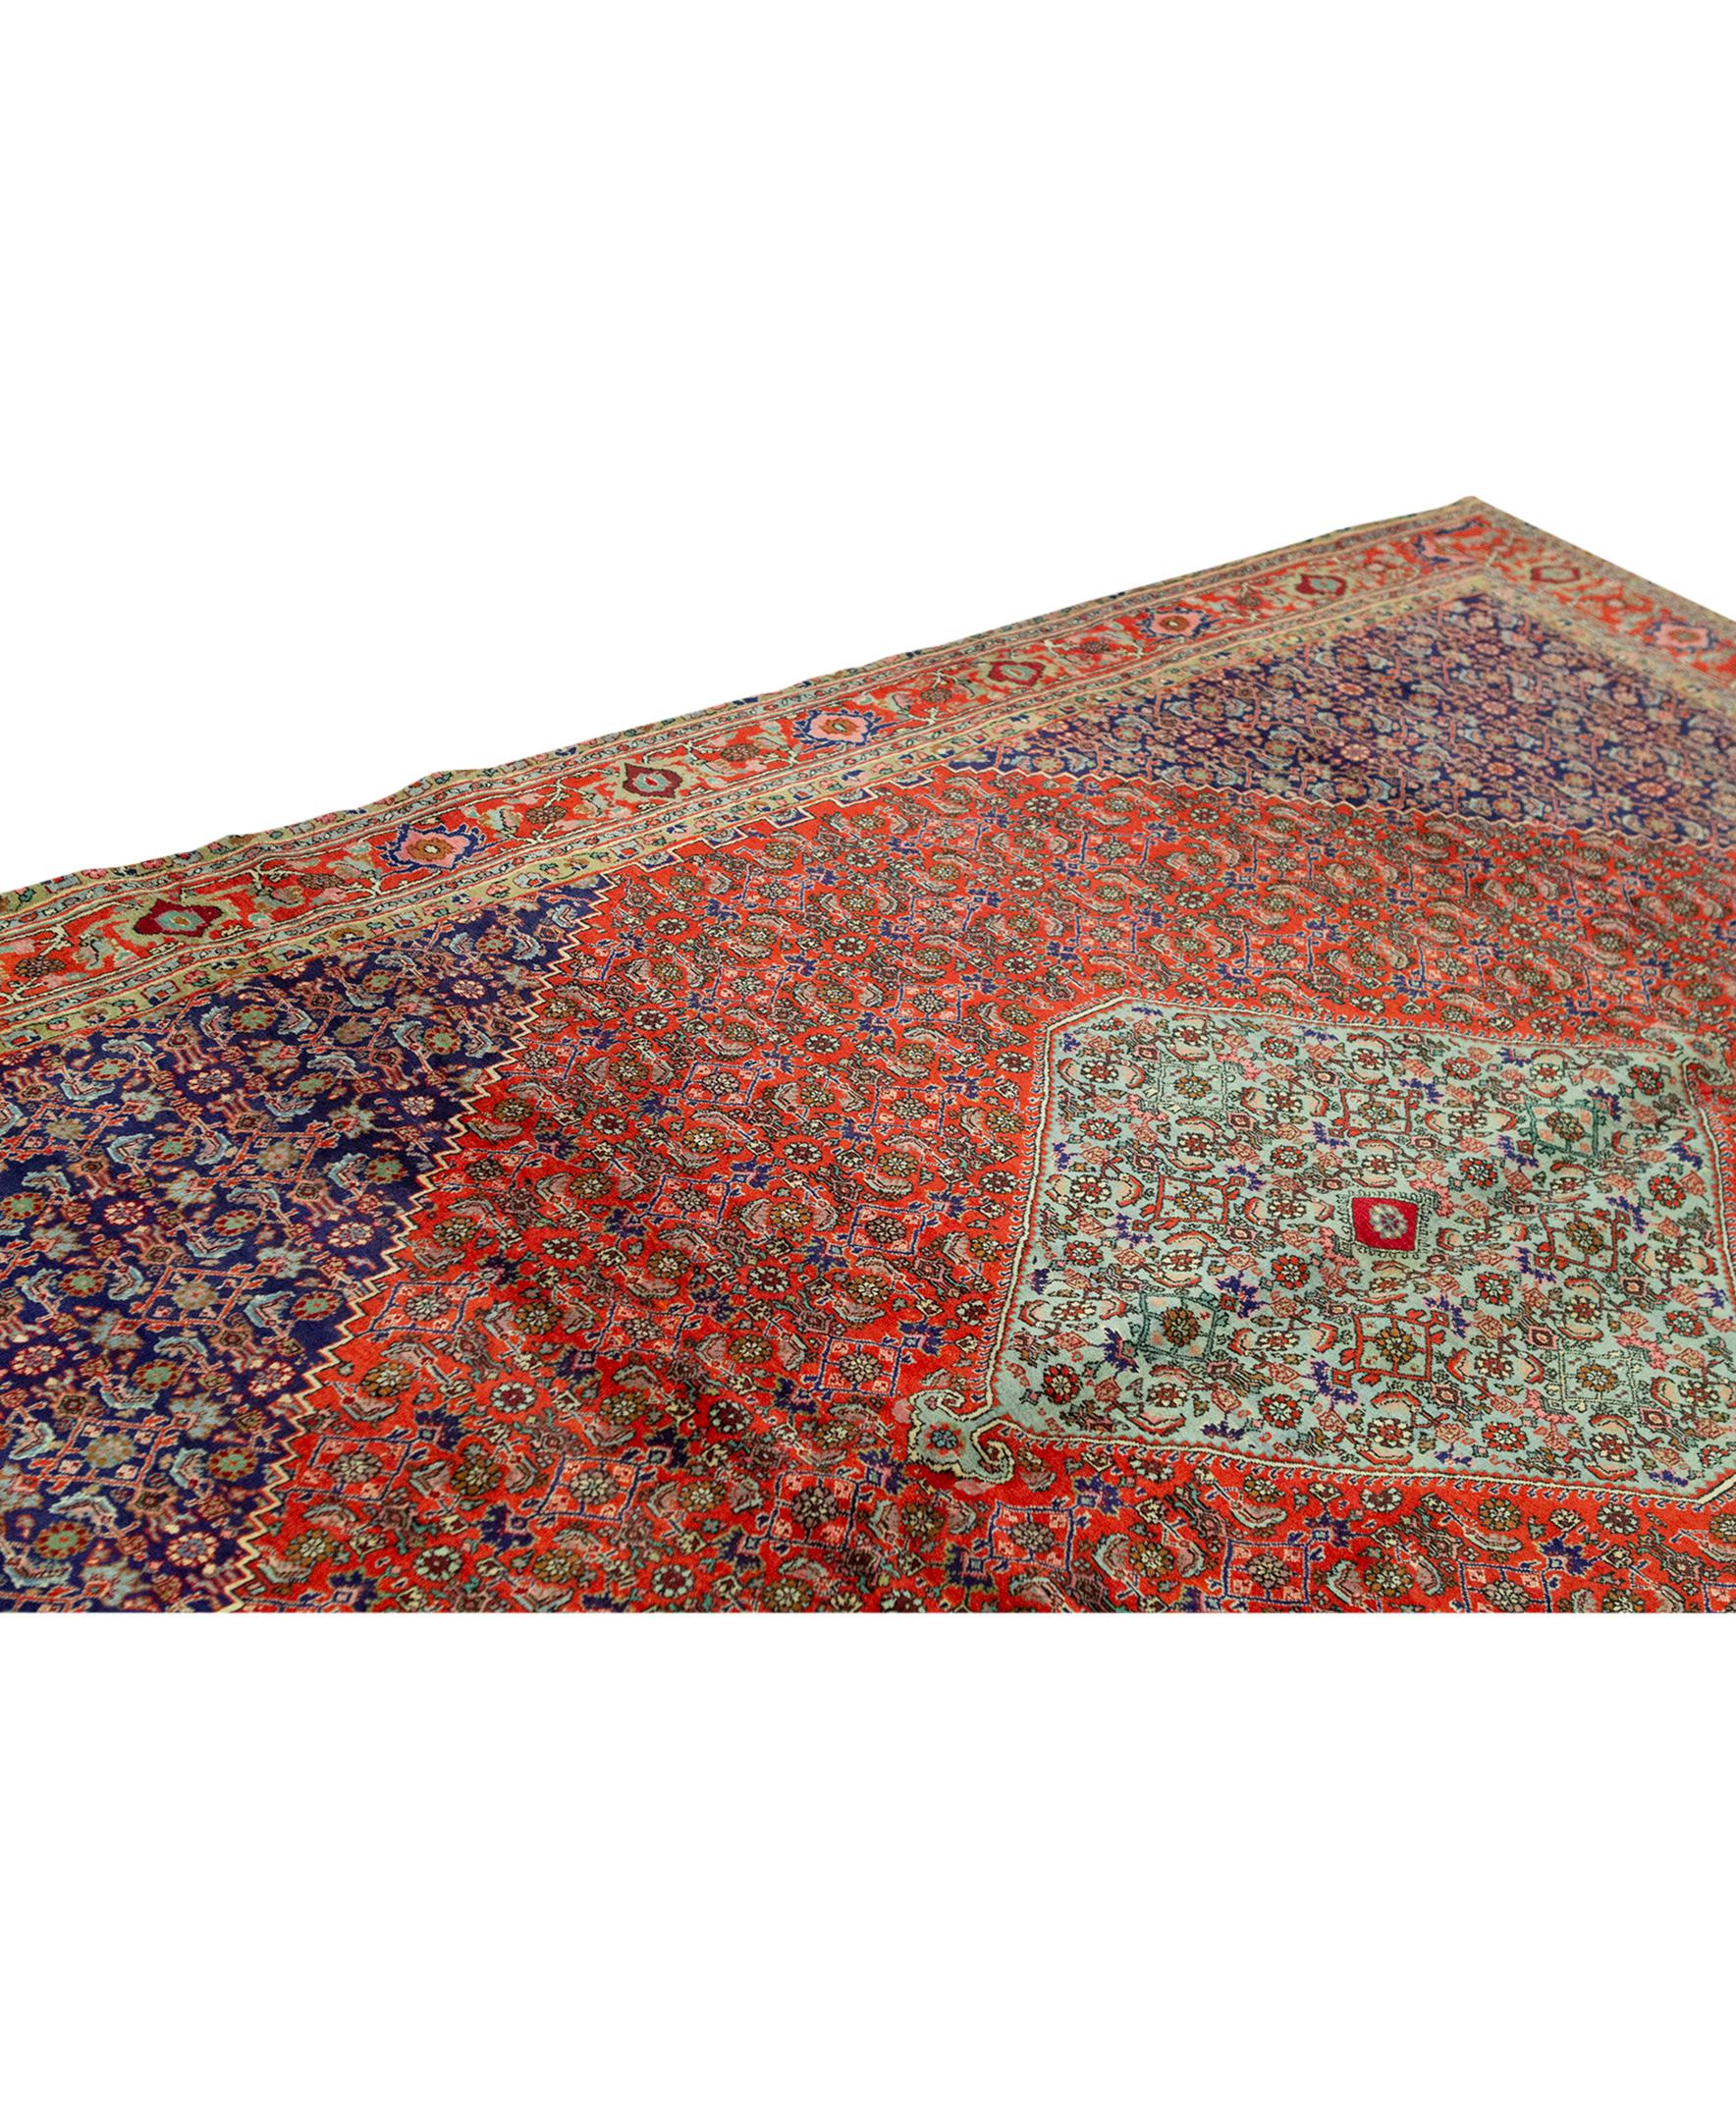 Tapis ancien persan traditionnel tissé à la main en laine de luxe rouge / marine. Taille : 7'-7